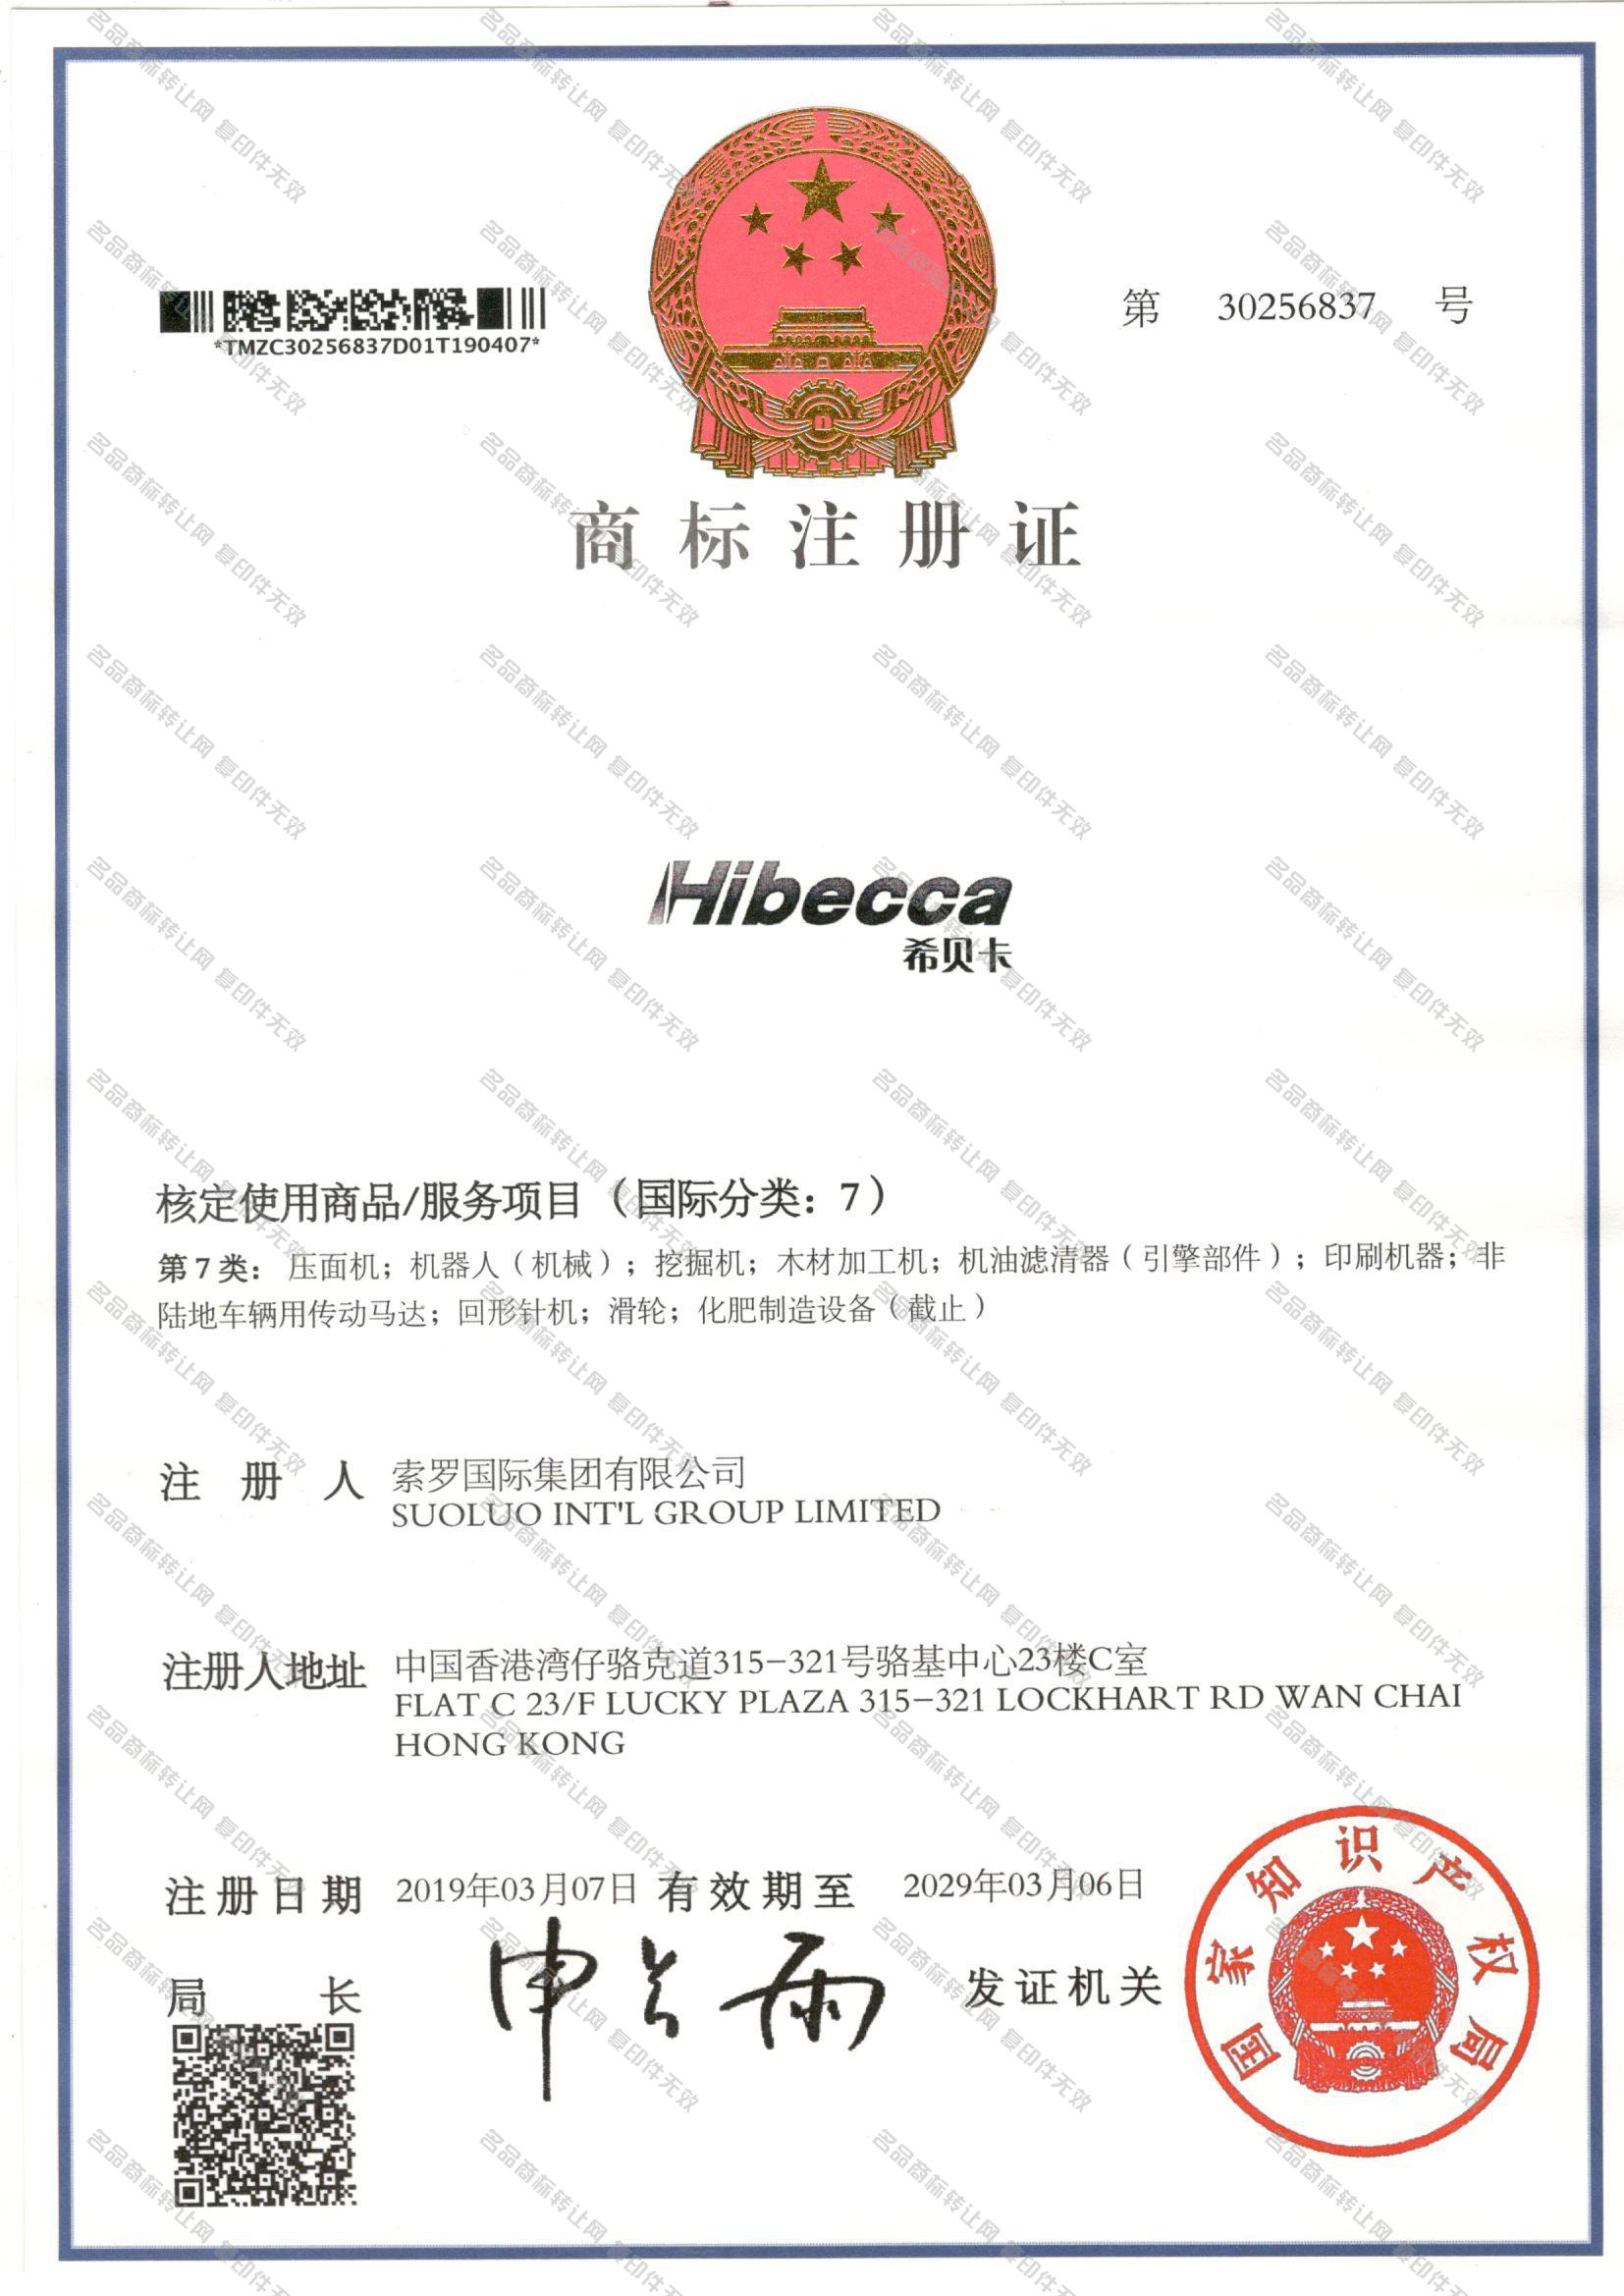 希贝卡 HIBECCA注册证